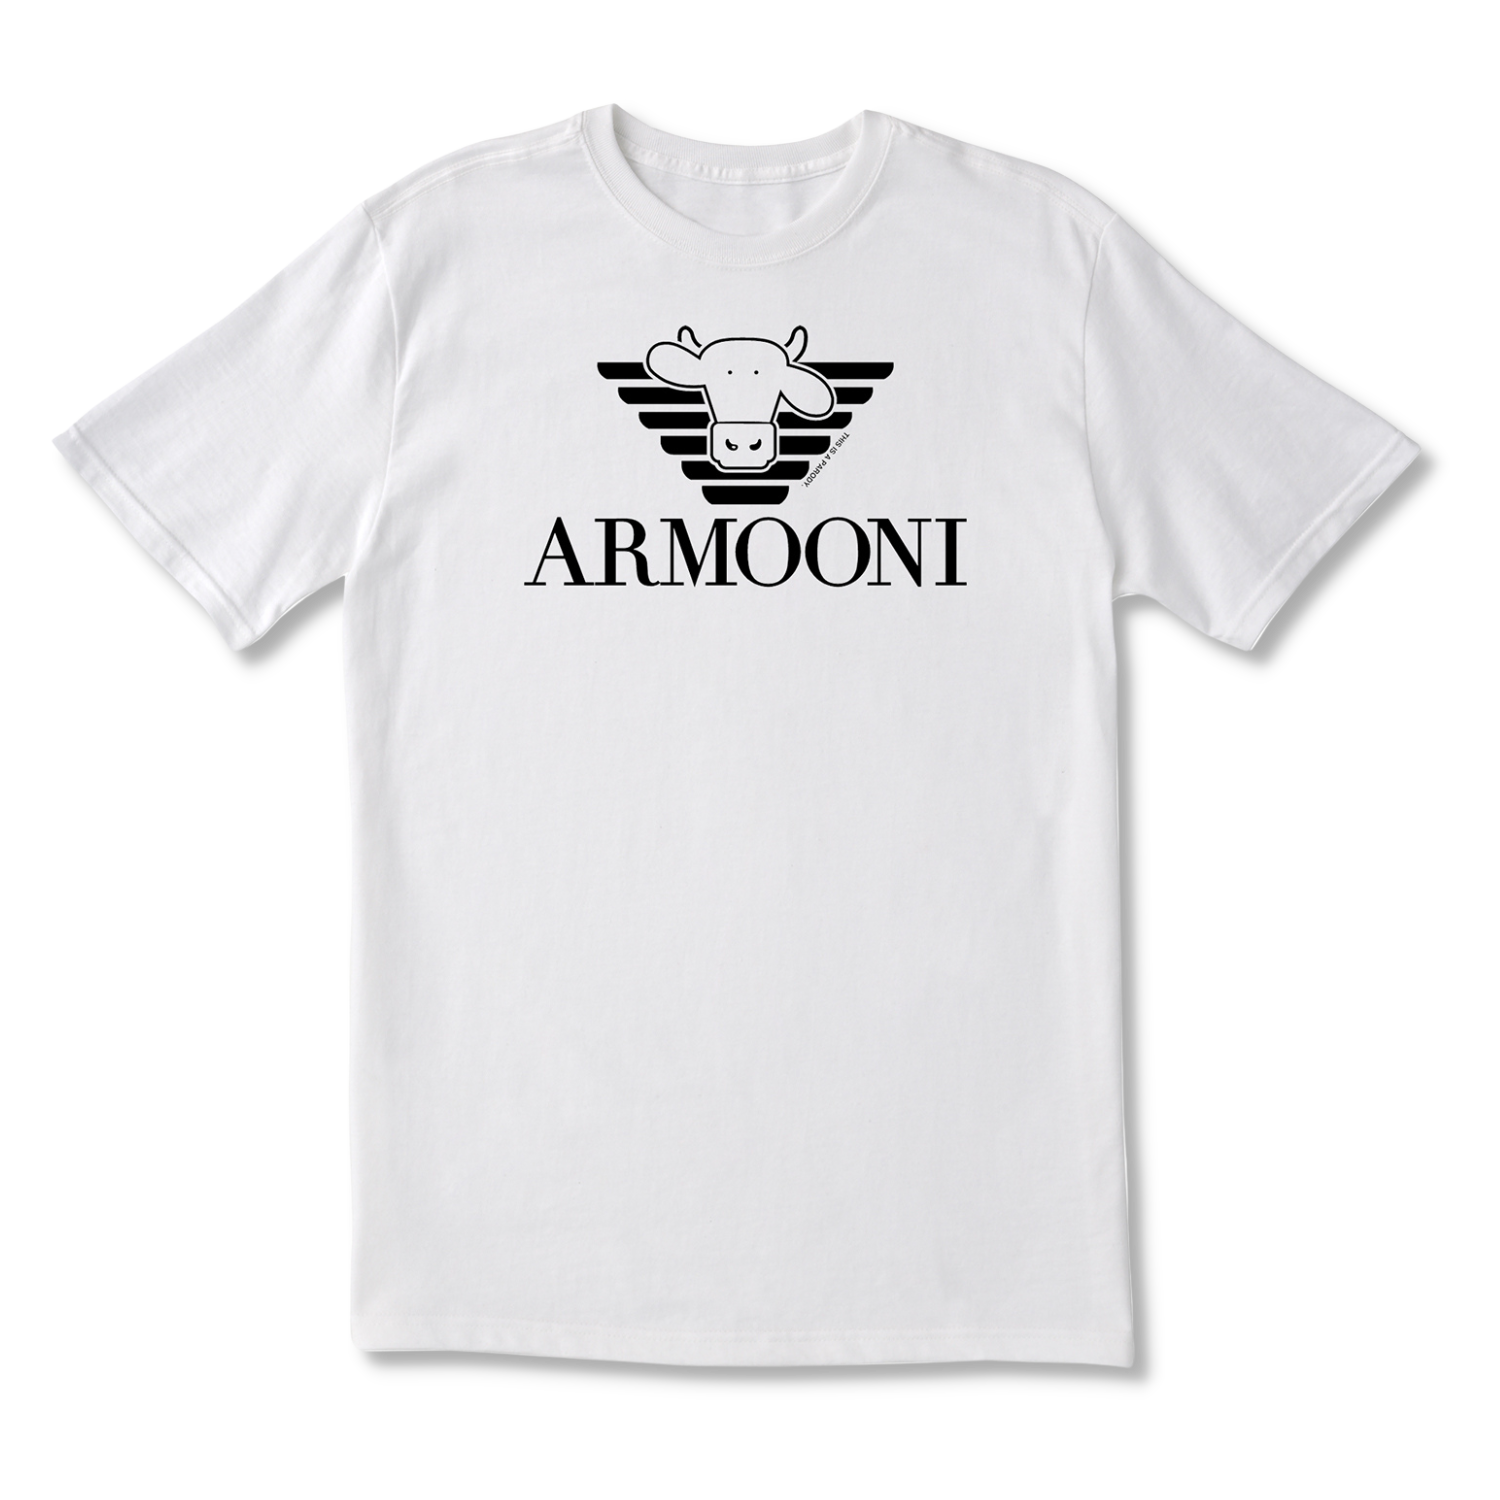 ArMOOni Adult T